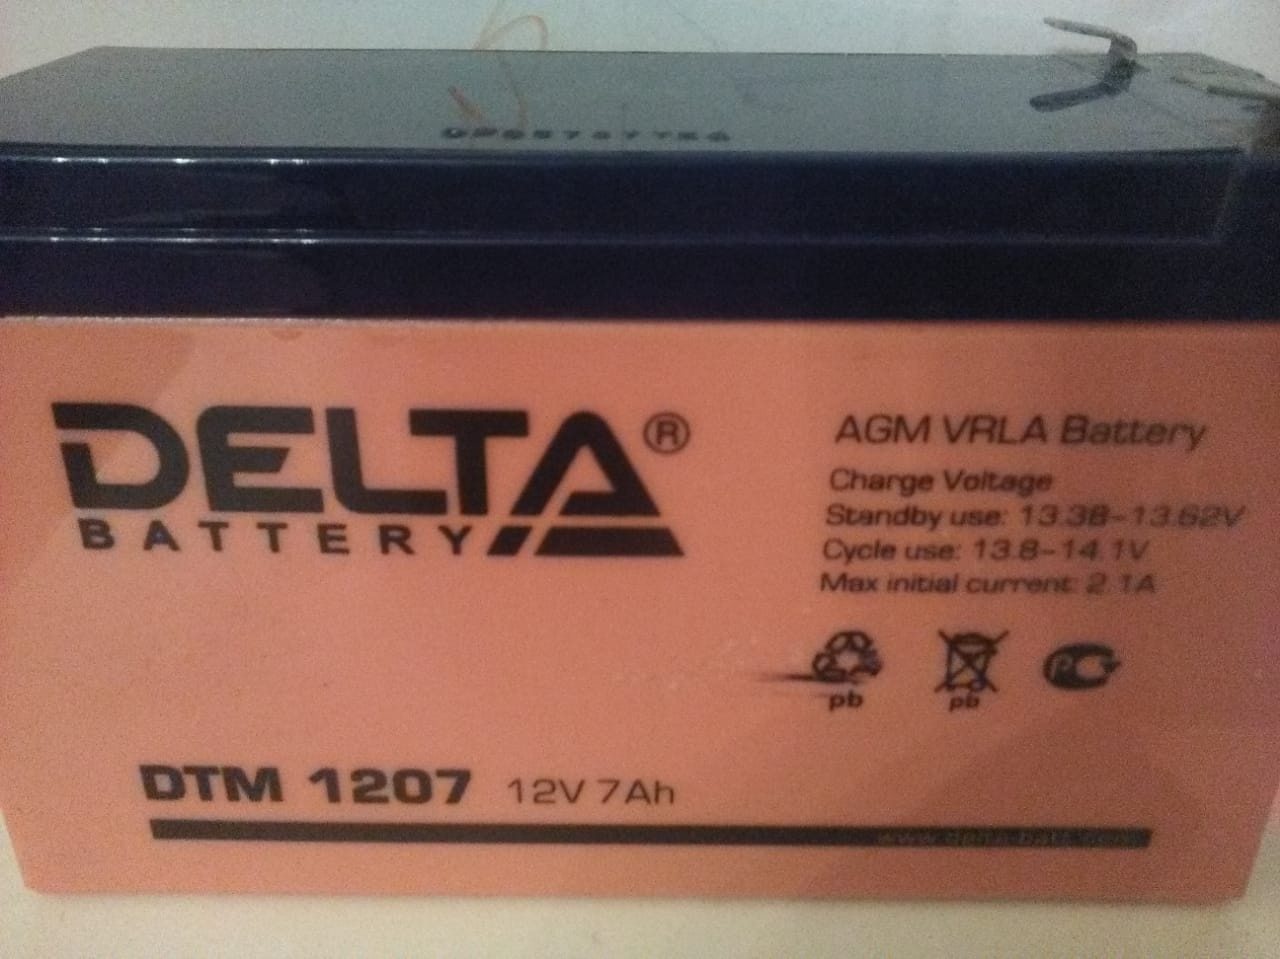 Аккумуляторная 12v 7ah. Аккумуляторная батарея Delta DT 12100 (12v / 100ah). Дельта аккумулятор 12v 7ah. Батарея Delta DT 1207 (12v, 7ah) <DT 1207>. Delta DTM 1207 12v.